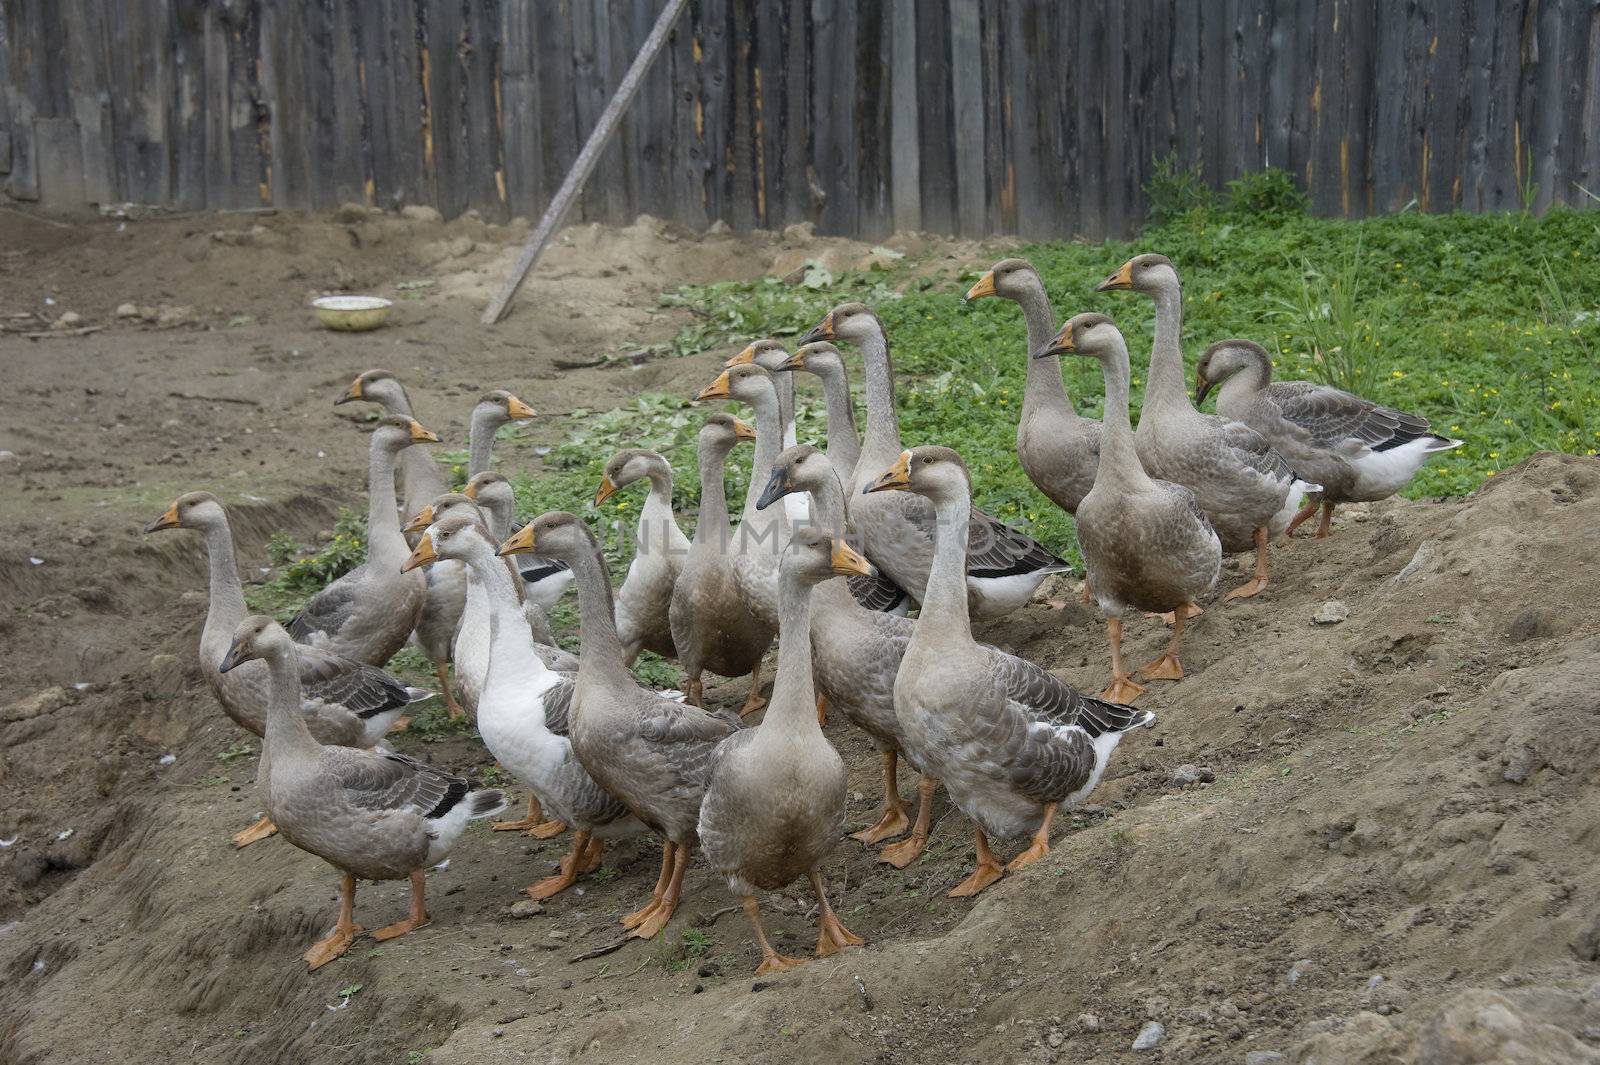 domestic geese walking in the barnyard farm